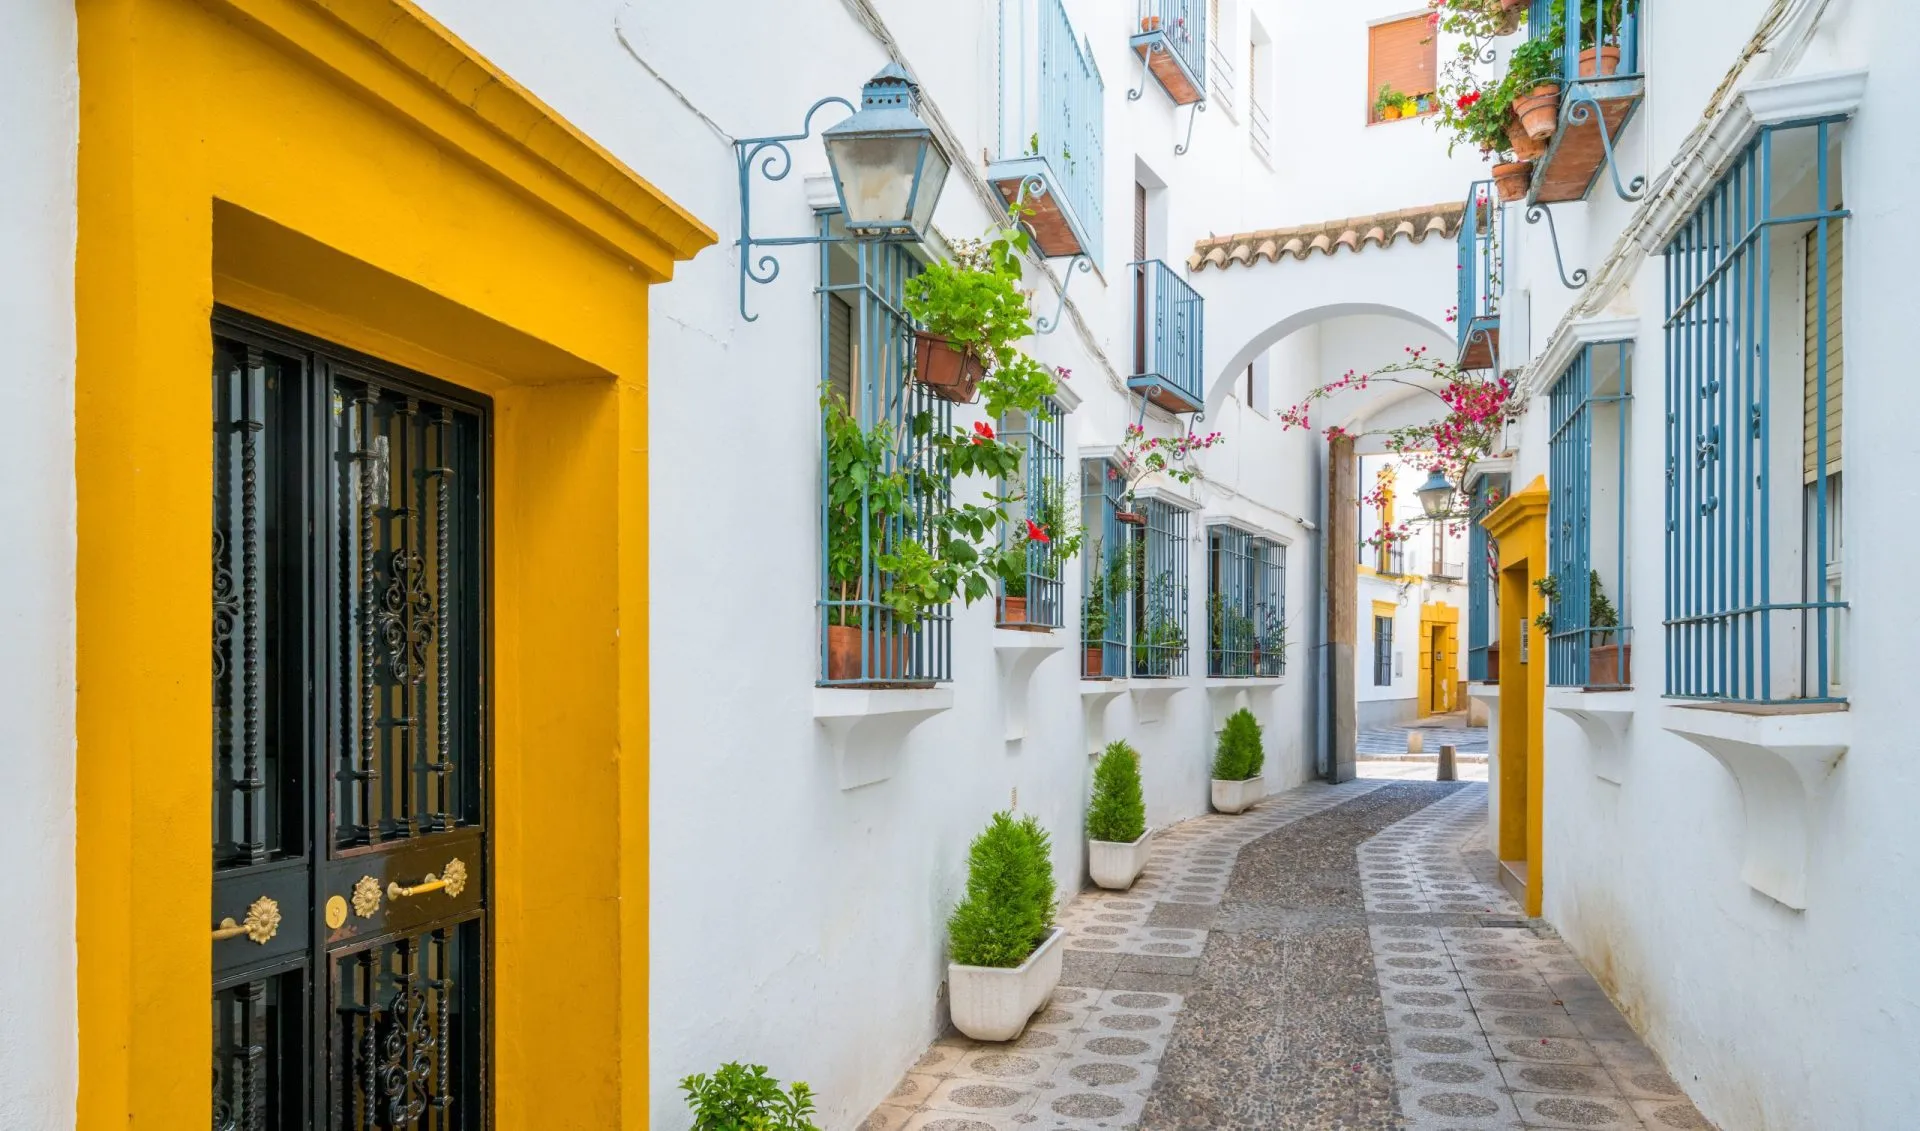 Naturskønt syn i det maleriske jødiske kvarter i Cordoba. Andalusien, Spanien.